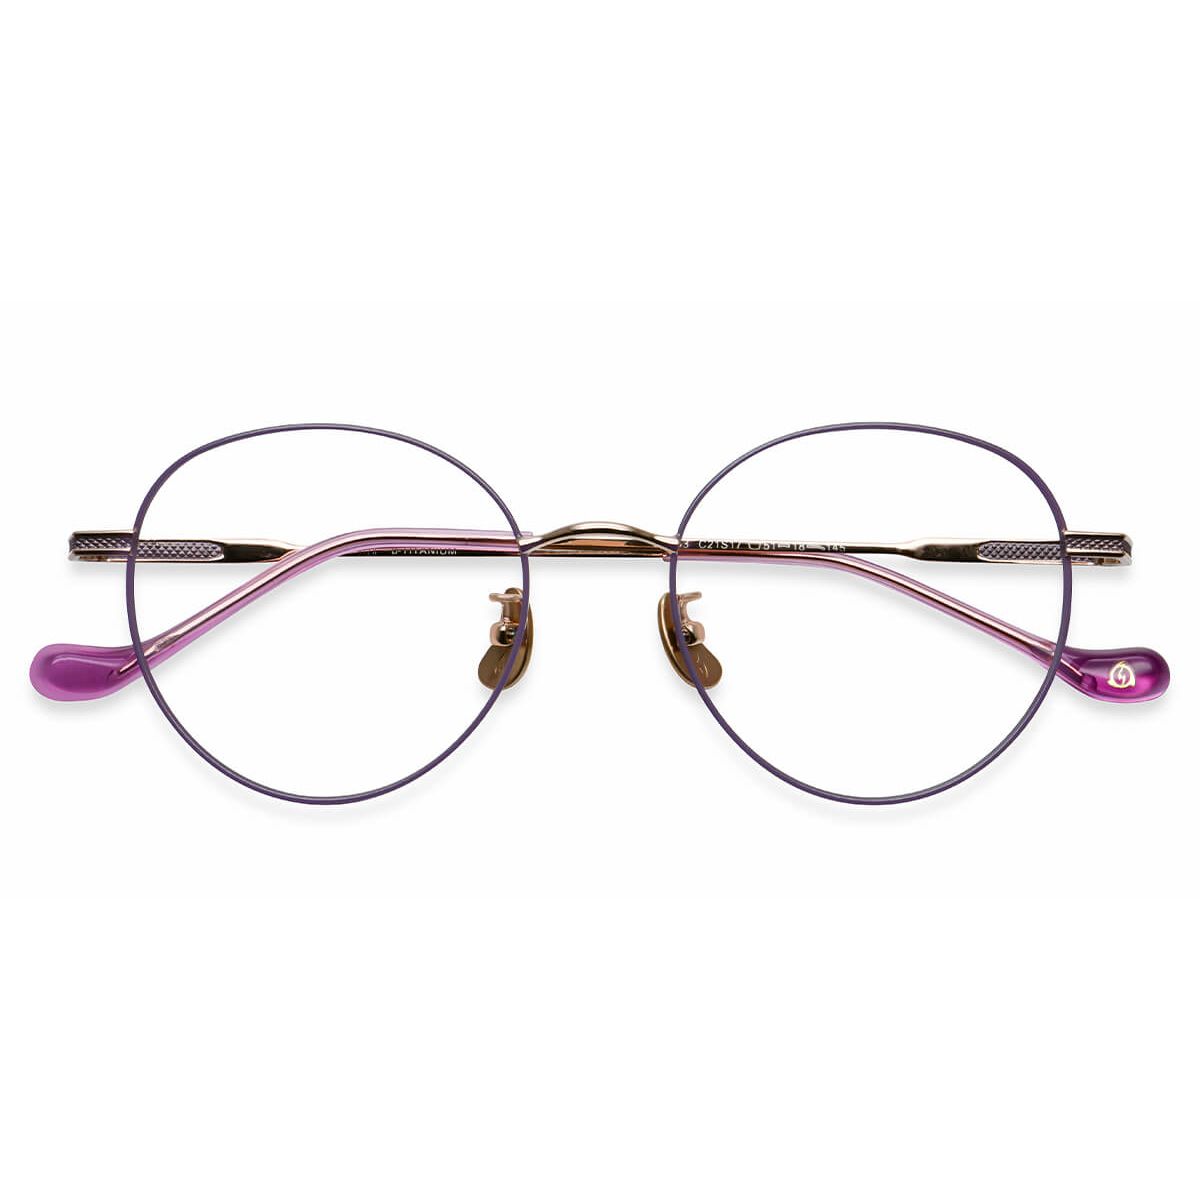 U9543 Round Yellow Eyeglasses Frames Leoptique